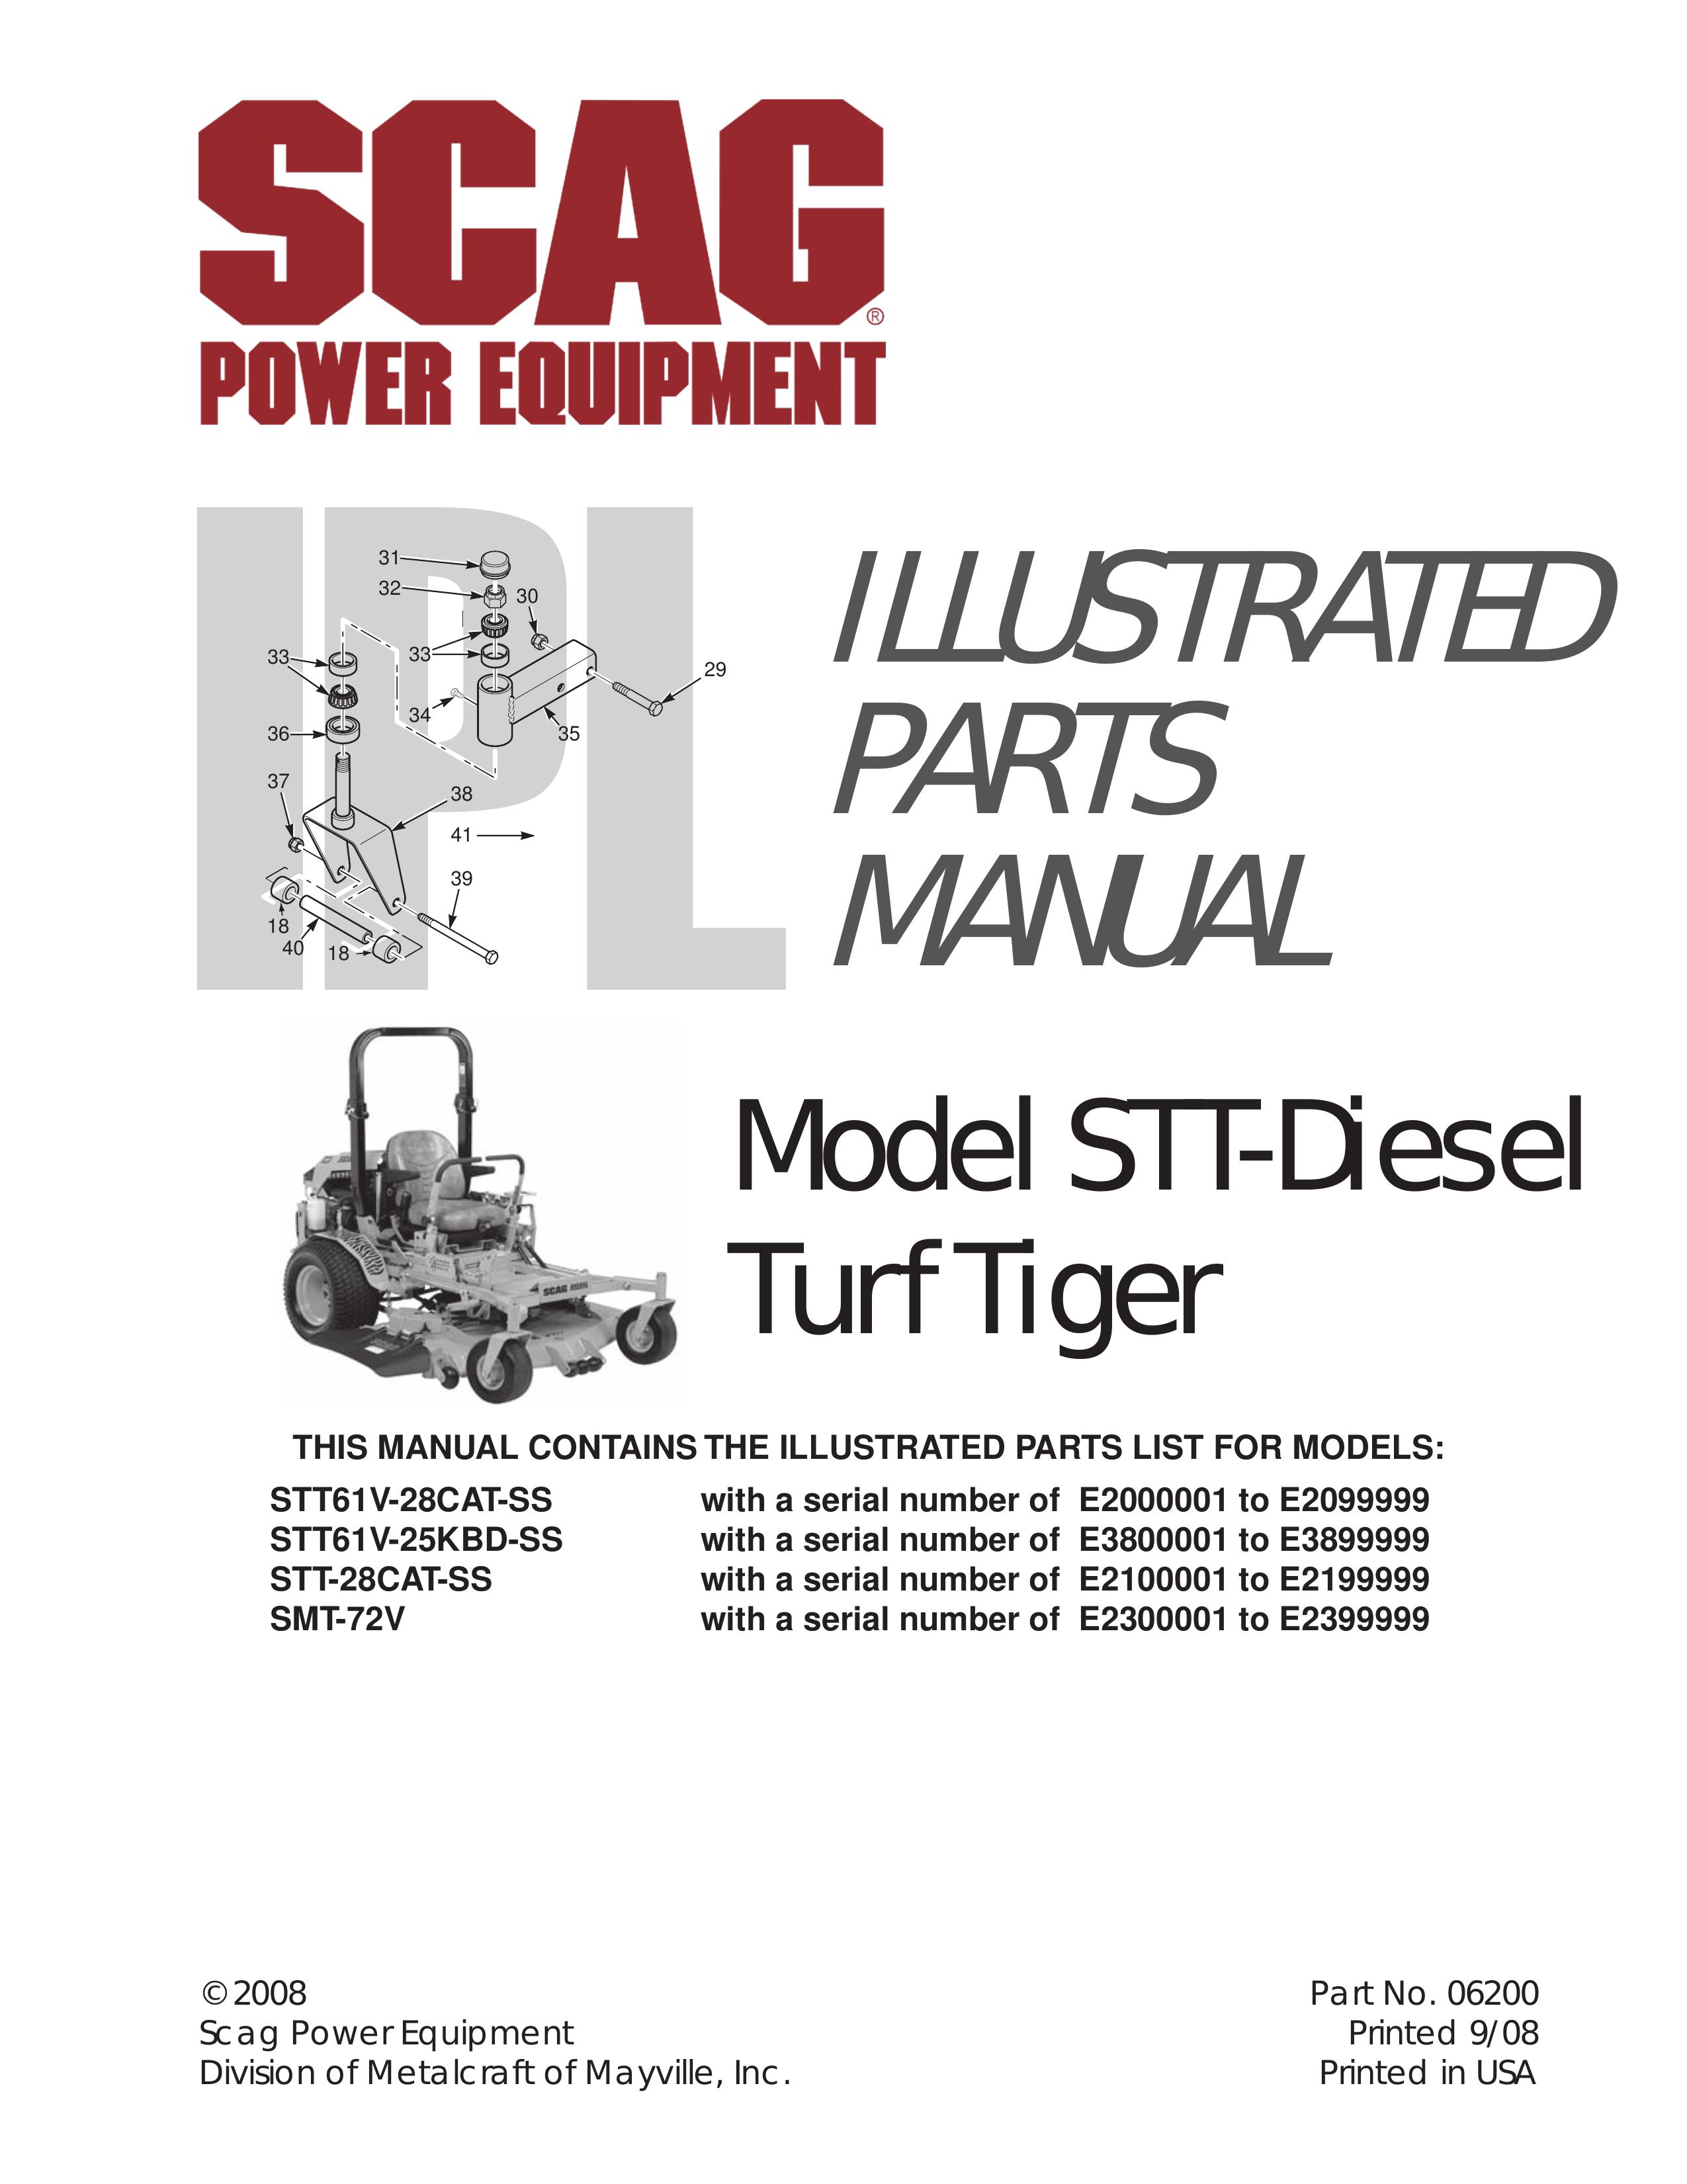 Scag Power Equipment SMT-72V Lawn Mower User Manual